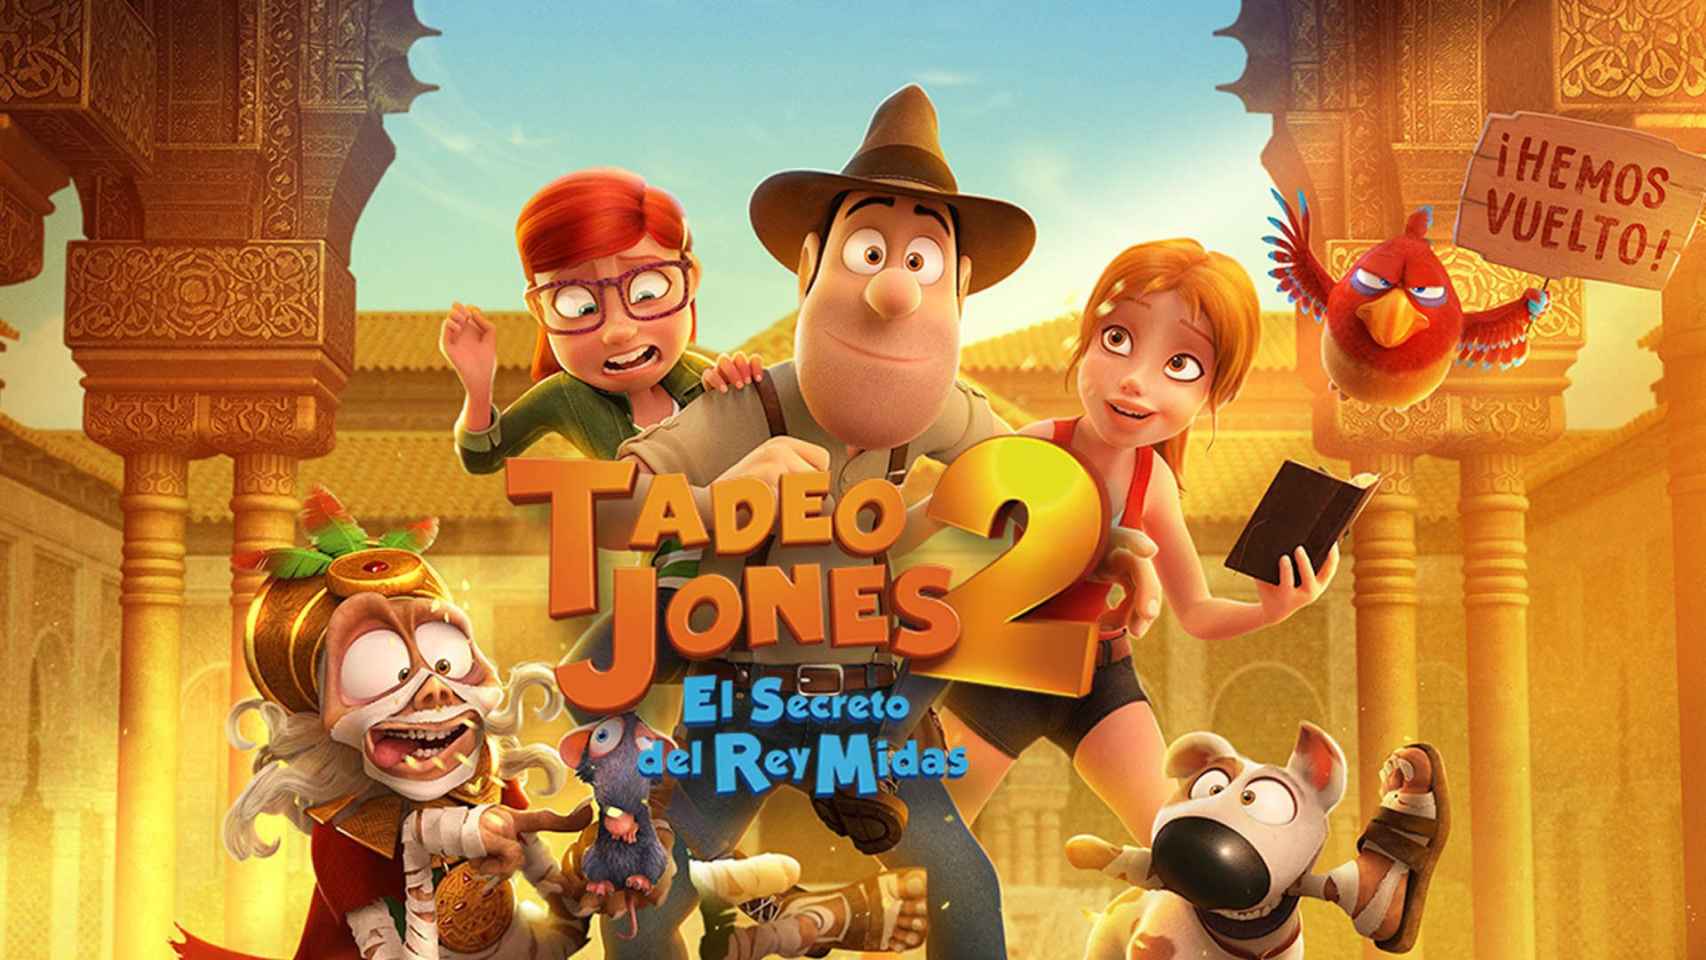 Tadeo Jones 2, una de las películas más taquilleras del cine español en 2017